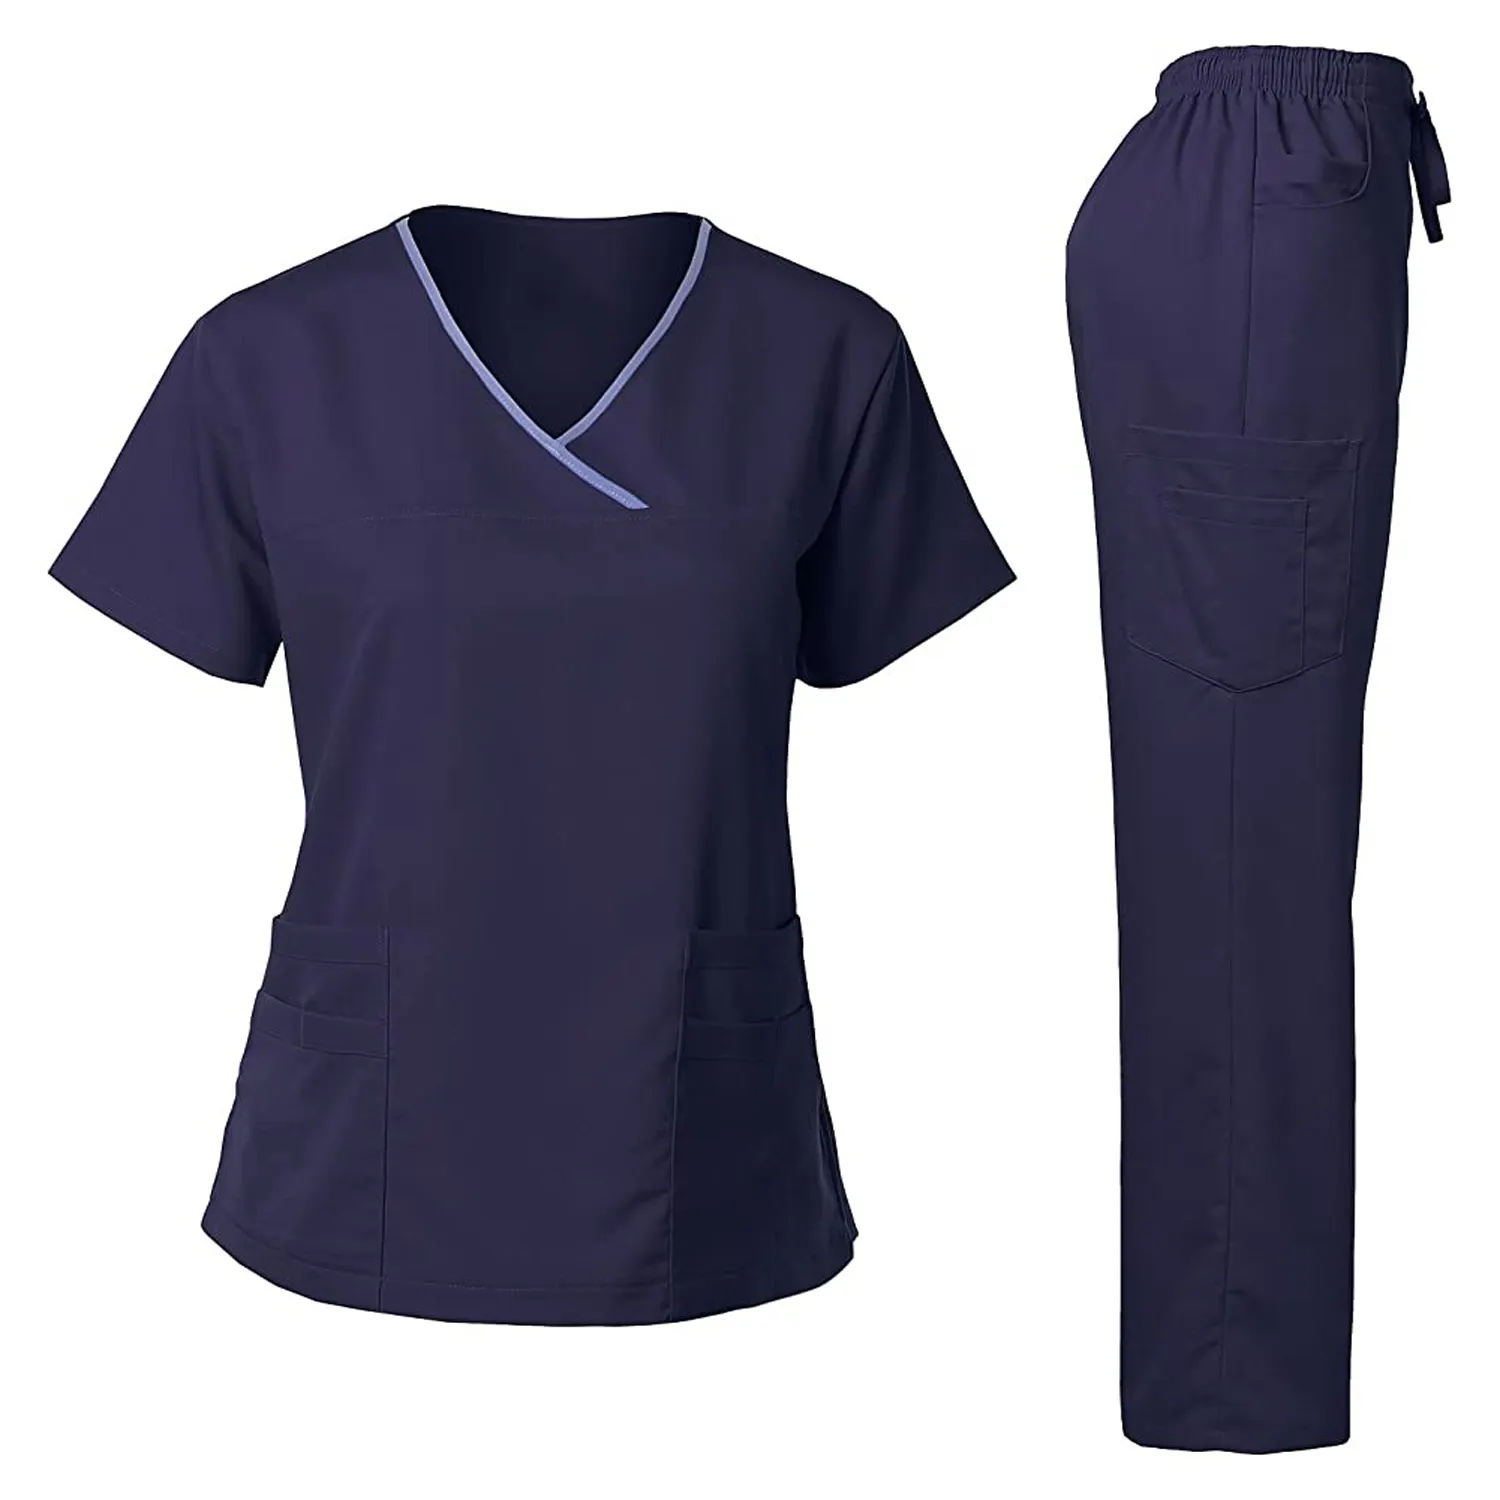 Commercio all'ingrosso multicolore tuta da ginnastica ospedale uniformi per le donne ultimo stile OEM Team Wear Uniforom